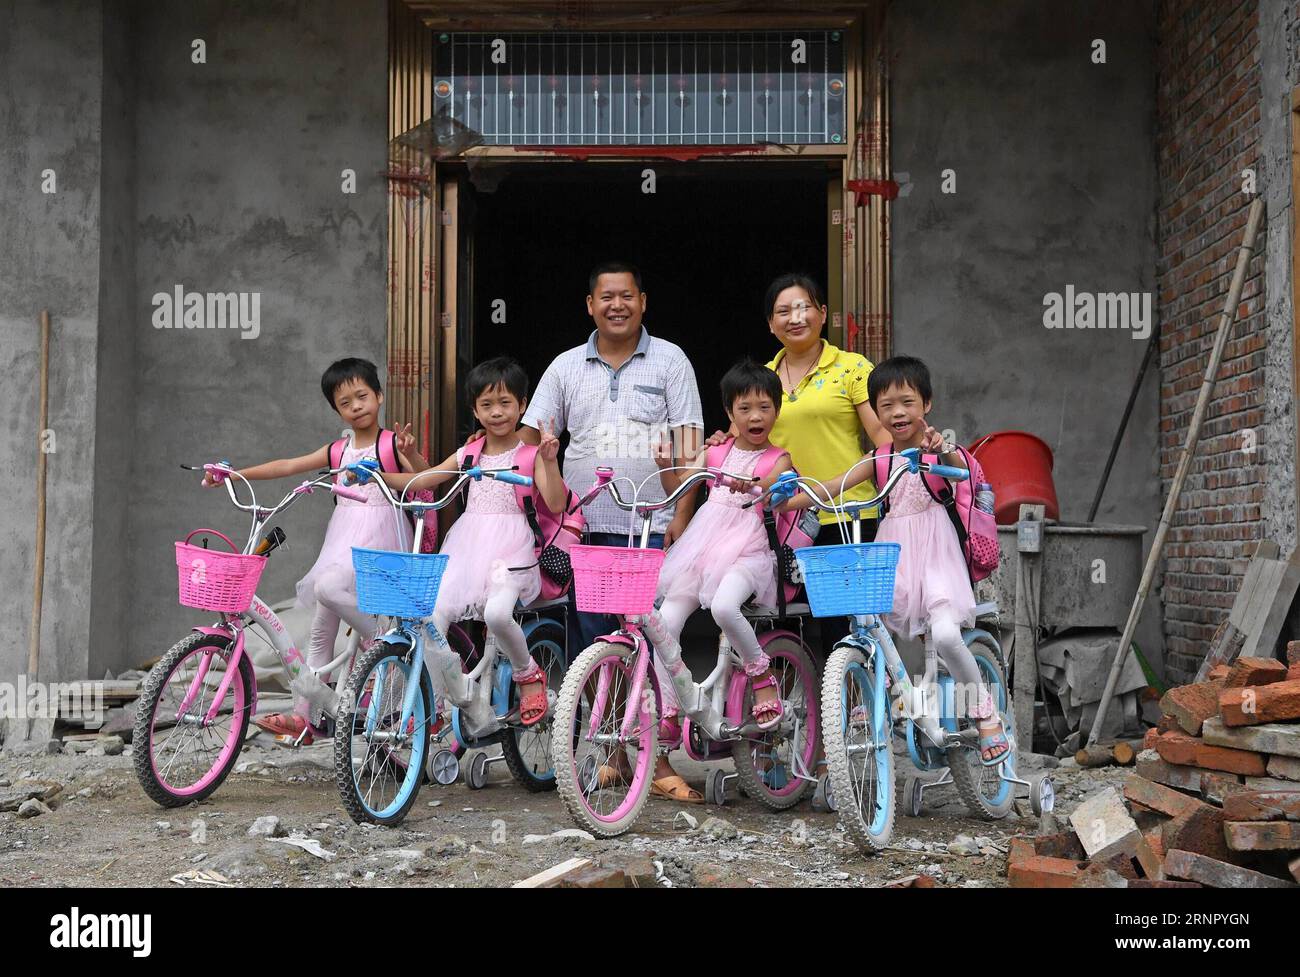 (170912) -- NANCHANG, 12 settembre 2017 -- Wu Nianyou, Deng Dinglan e i loro quadrupletti sono visti di fronte alla casa a tre piani in costruzione nel villaggio di Shangbao della contea di Chongyi nella città di Ganzhou, nella provincia di Jiangxi della Cina orientale, 7 settembre 2017. Padre Wu Nianyou e madre Deng Dinglan avevano le belle quadruple nel settembre del 2010. Da quel momento in poi, non hanno mai smesso di lottare contro la povertà e negli ultimi sette anni si è verificato un cambiamento fondamentale. Il marito è stato impegnato in un'attività per la raccolta di ratti di bambù e la sua attività è stata ampliata quest'anno con il numero di ratti in aumento Foto Stock